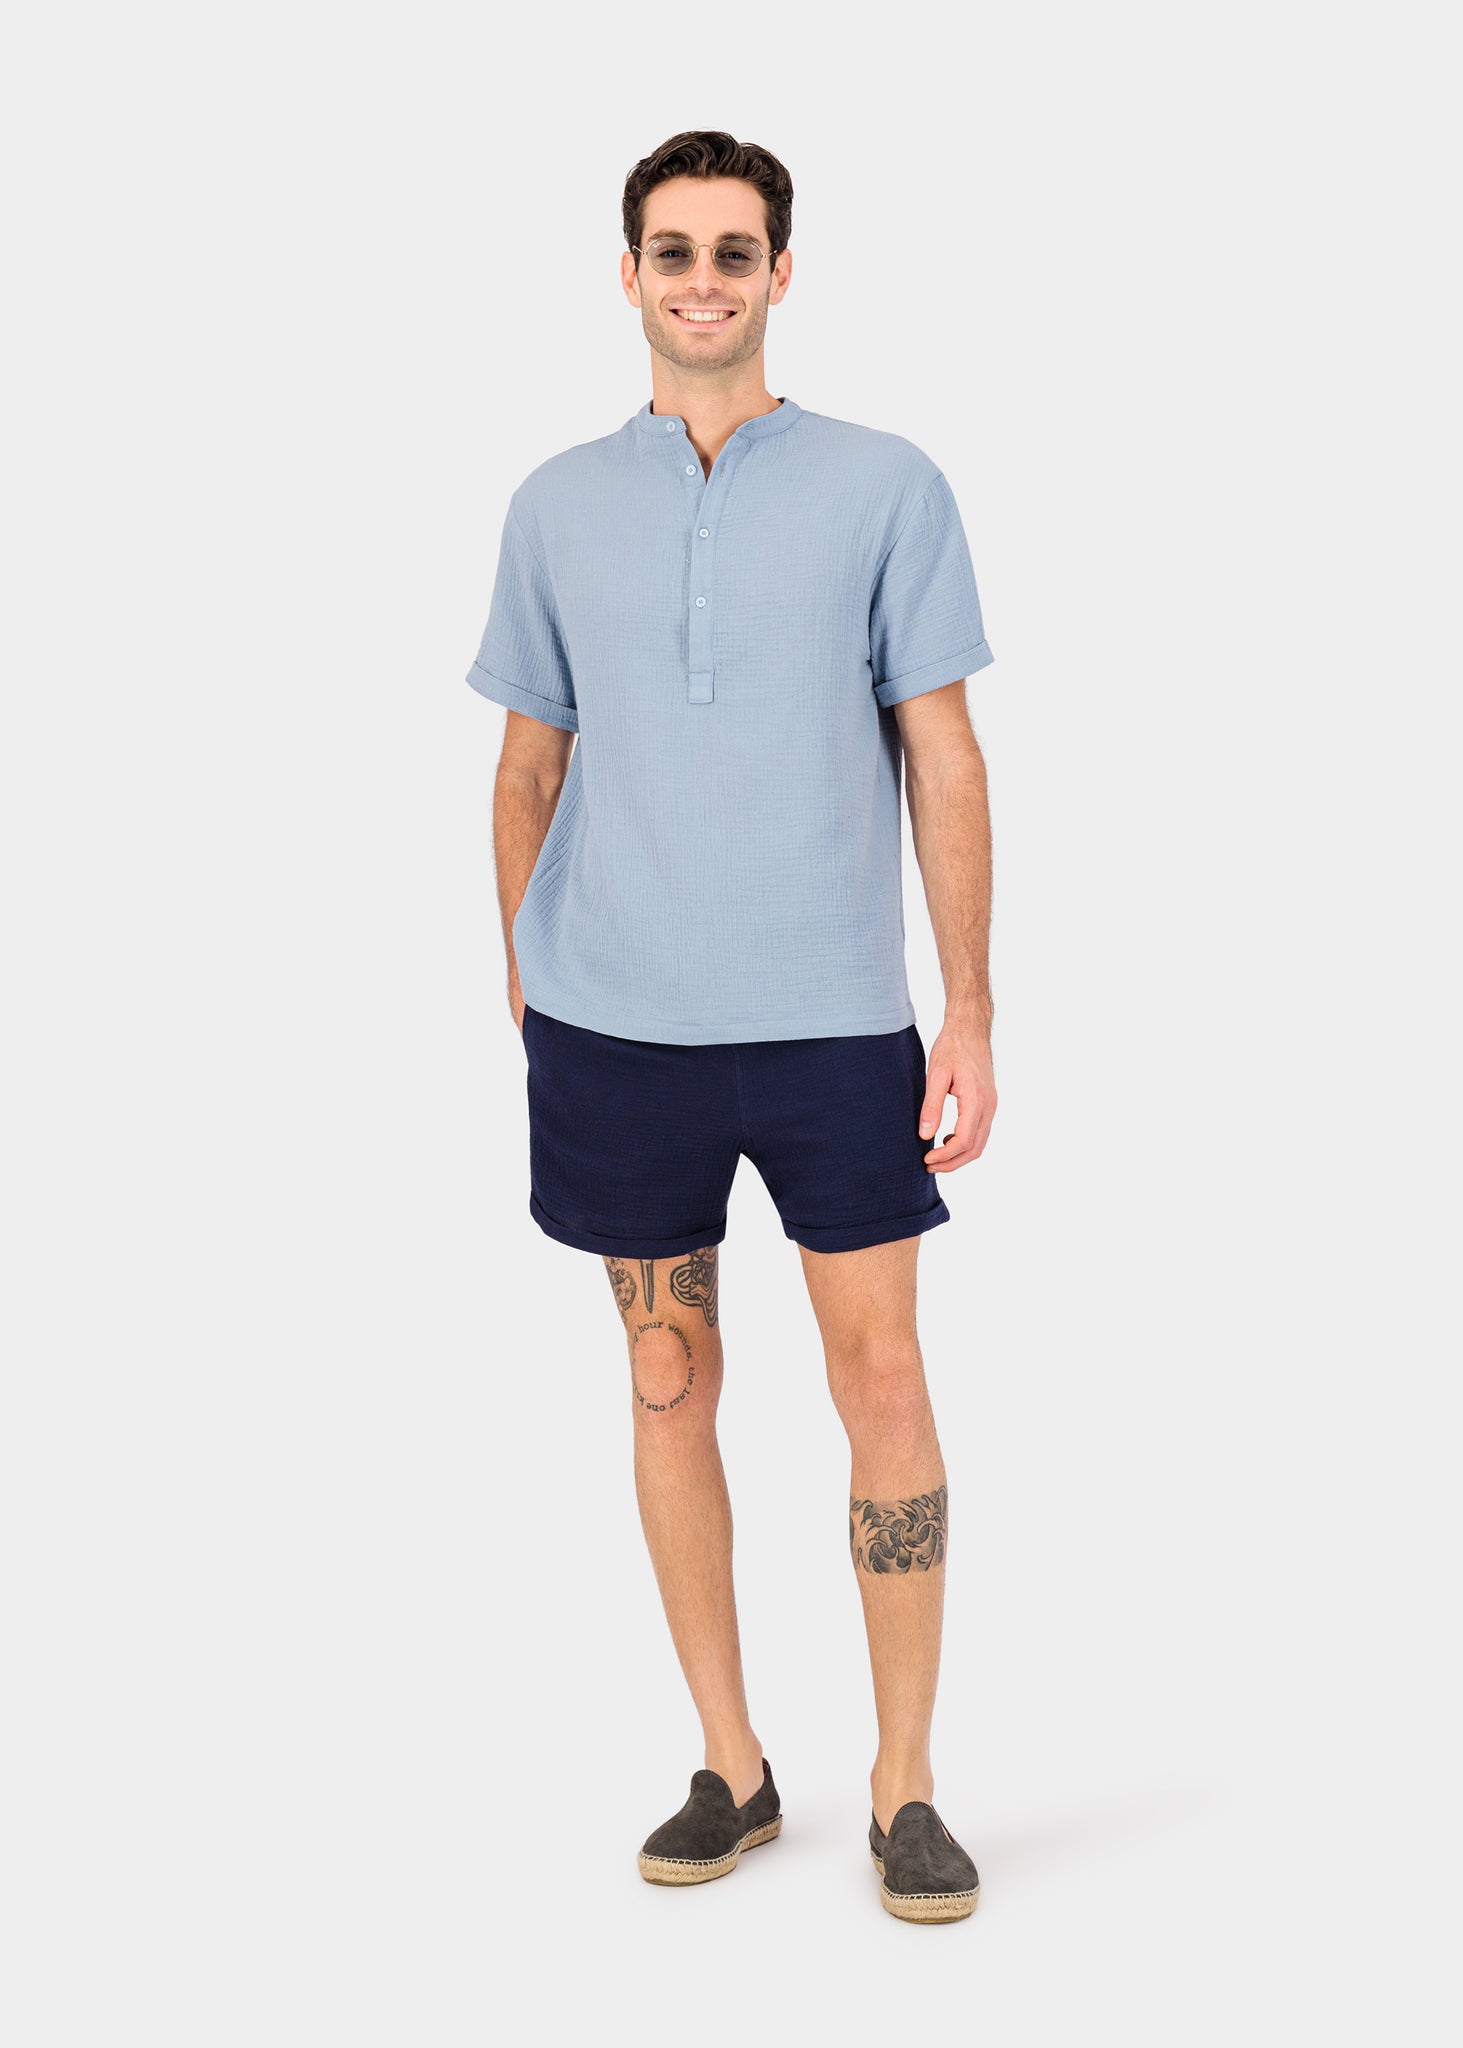 Rio shorts